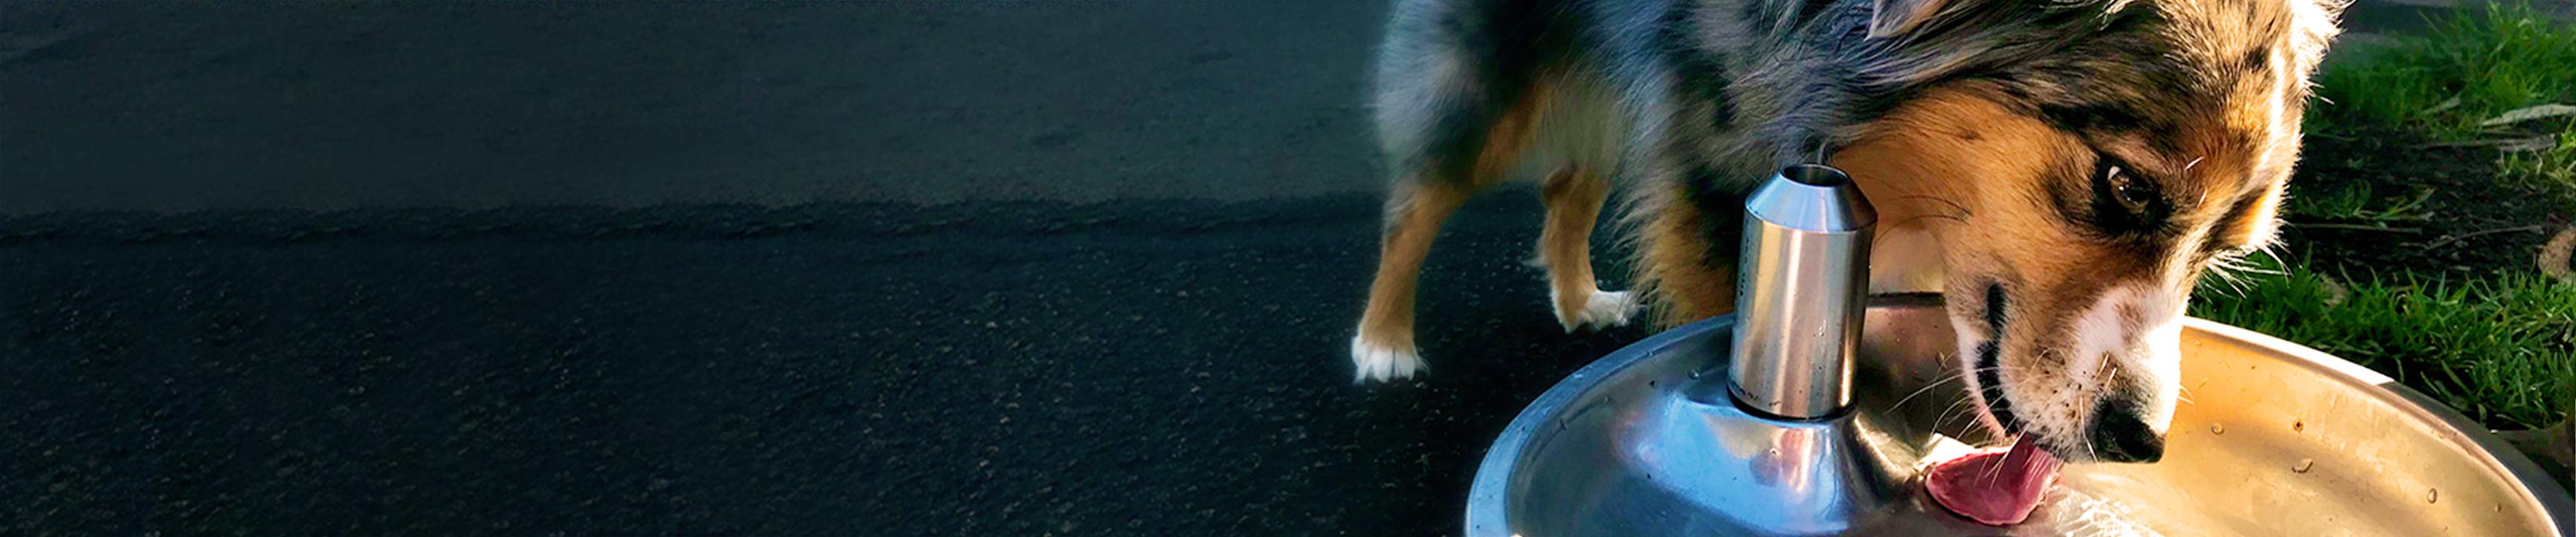 Chó uống nước ở đài phun nước cho chó